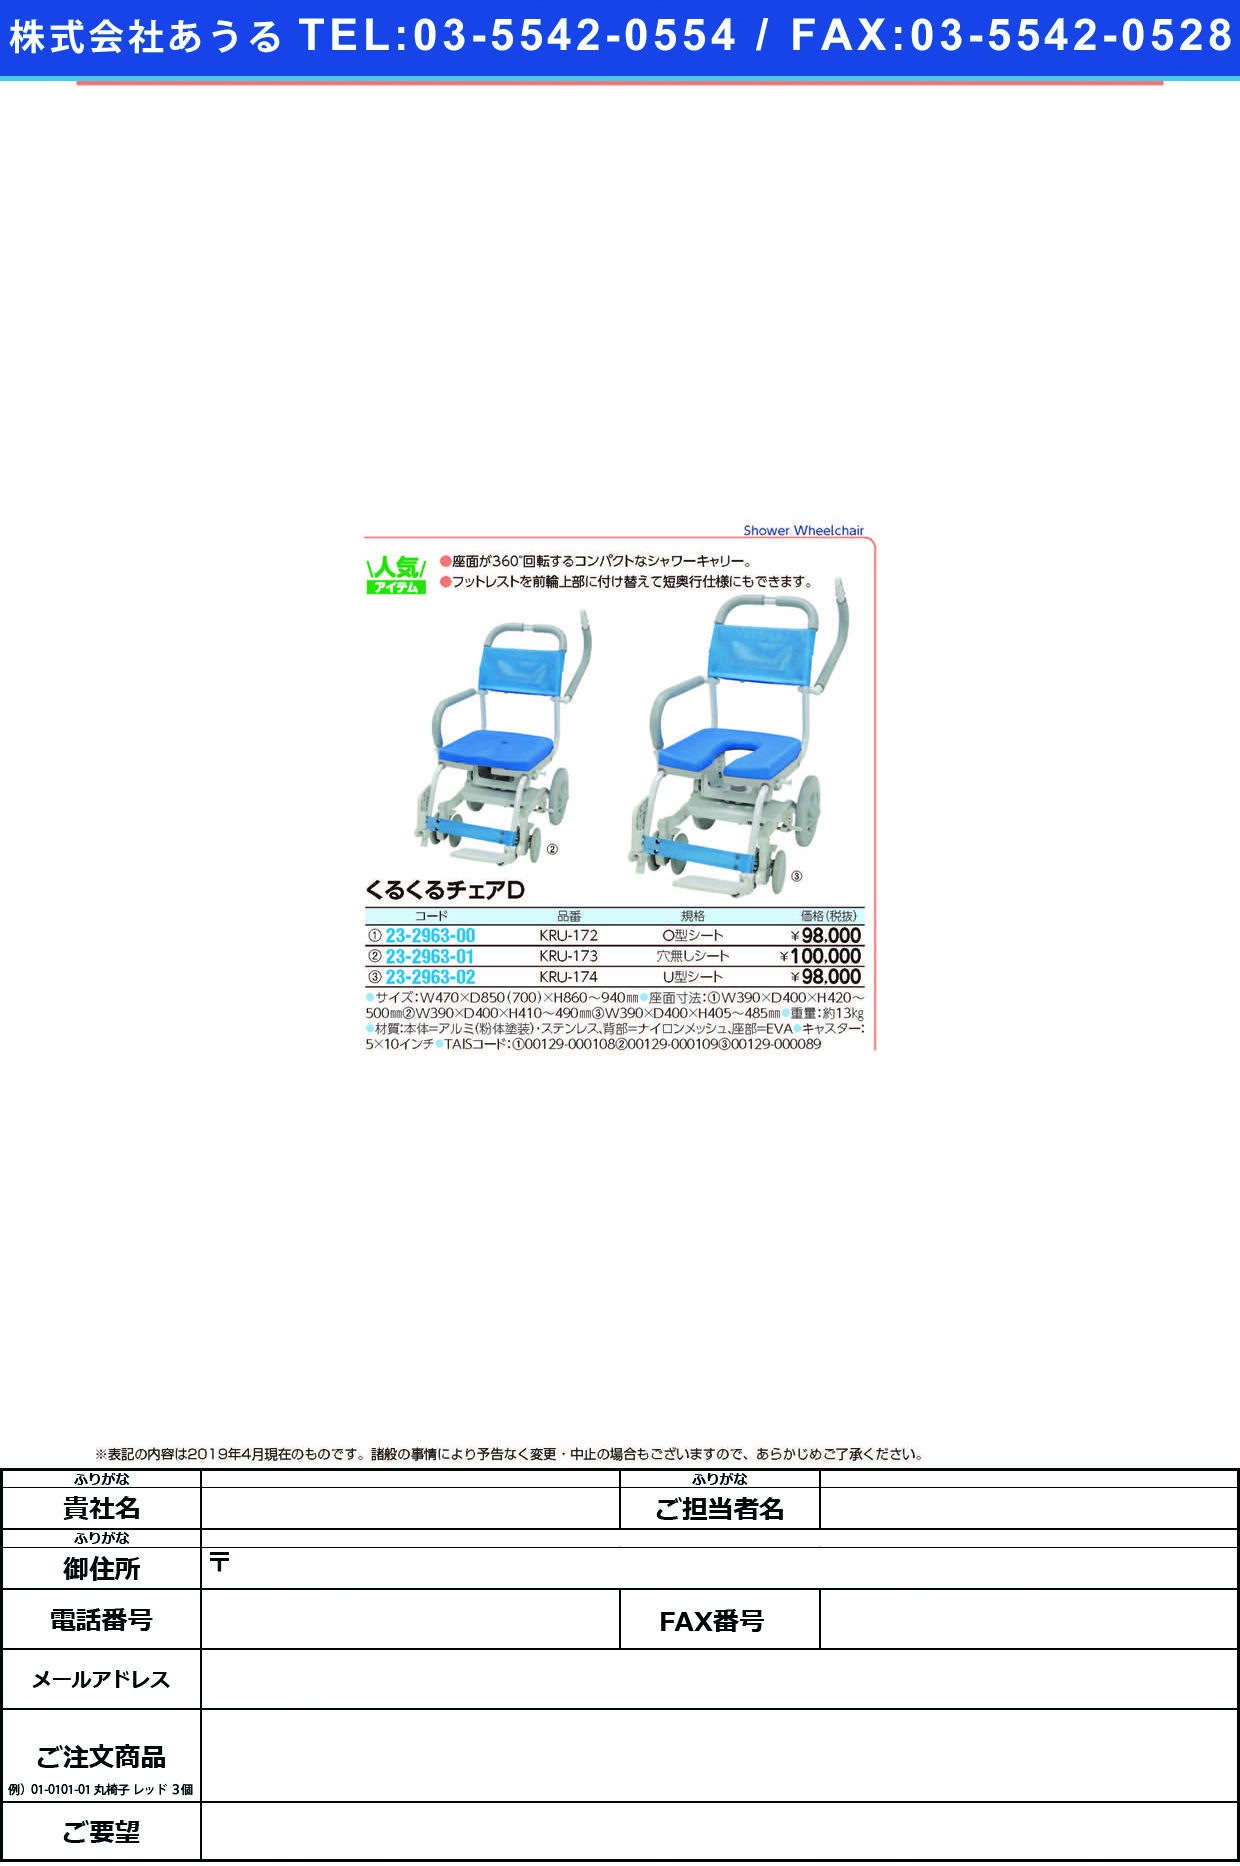 (23-2963-00)くるくるチェアＤ（Ｏ型シート） KRU-172 ｸﾙｸﾙﾁｪｱD【1台単位】【2019年カタログ商品】